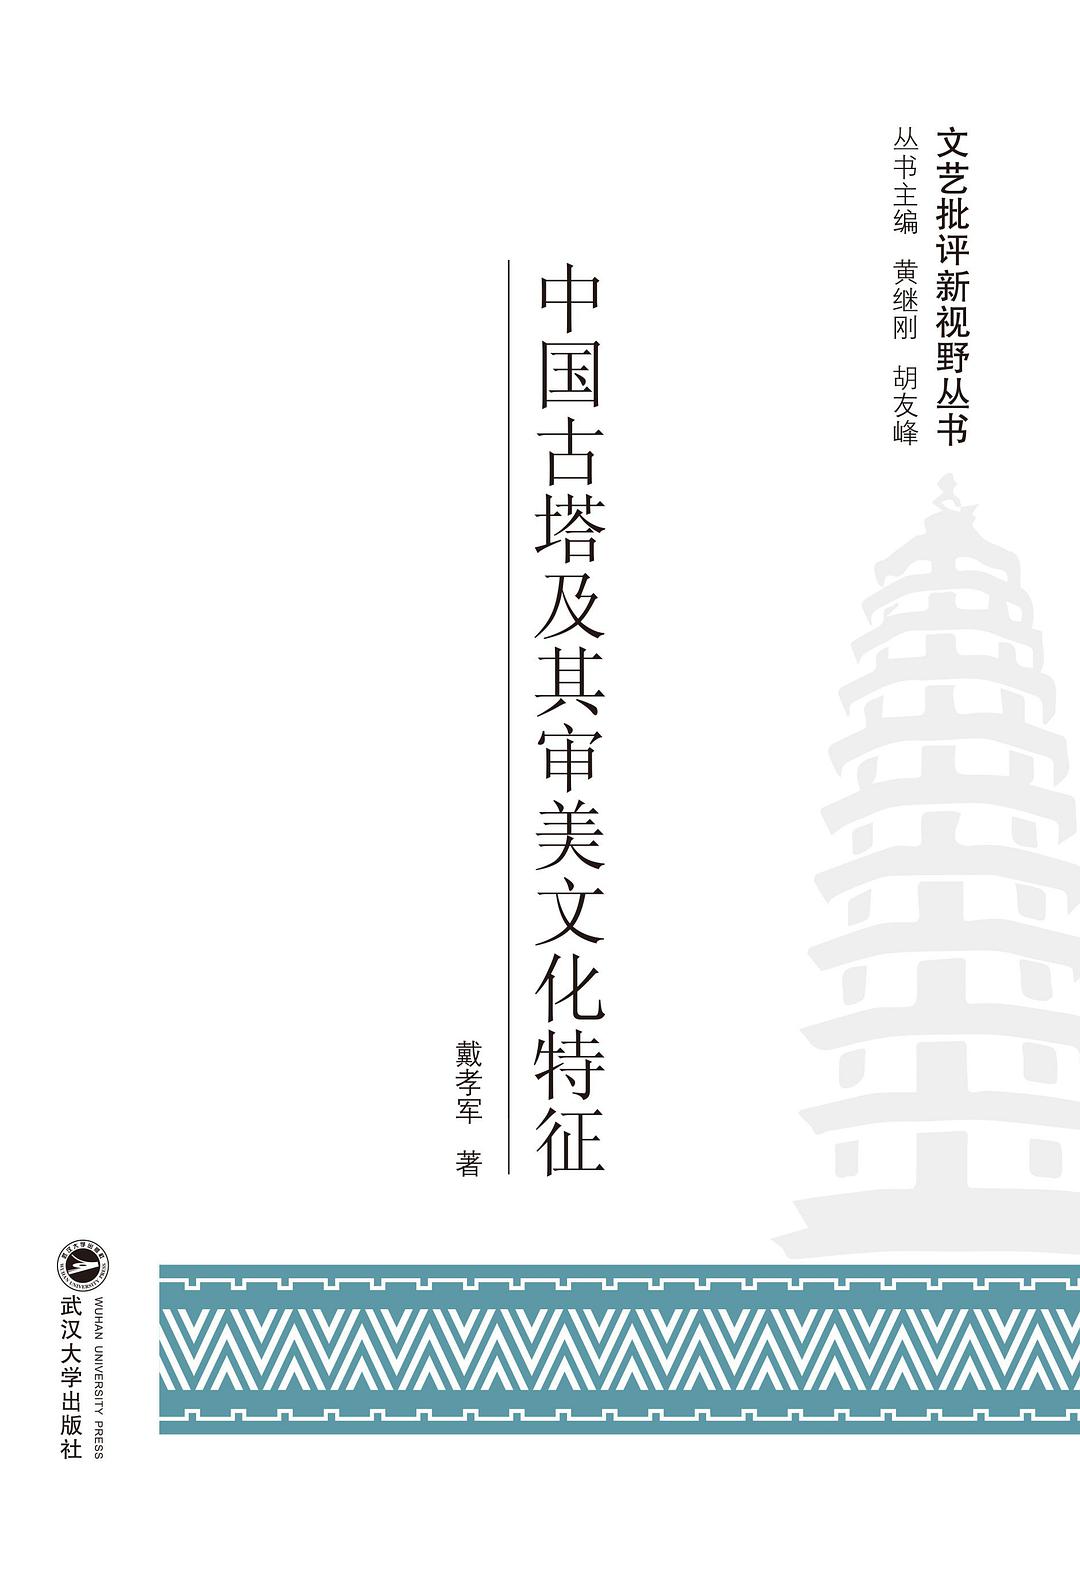 中国古塔及其审美文化特征